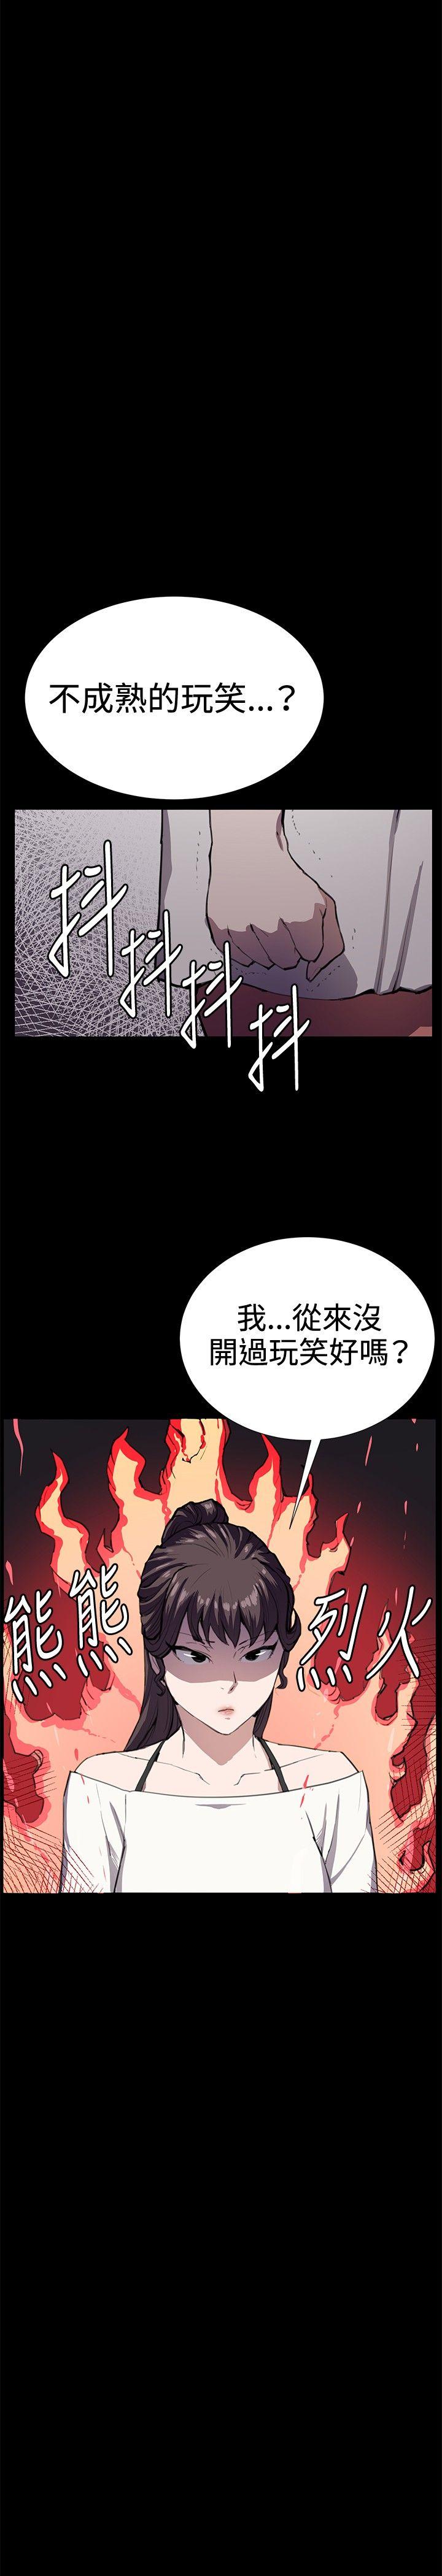 韩国污漫画 深夜便利店 第27话 31